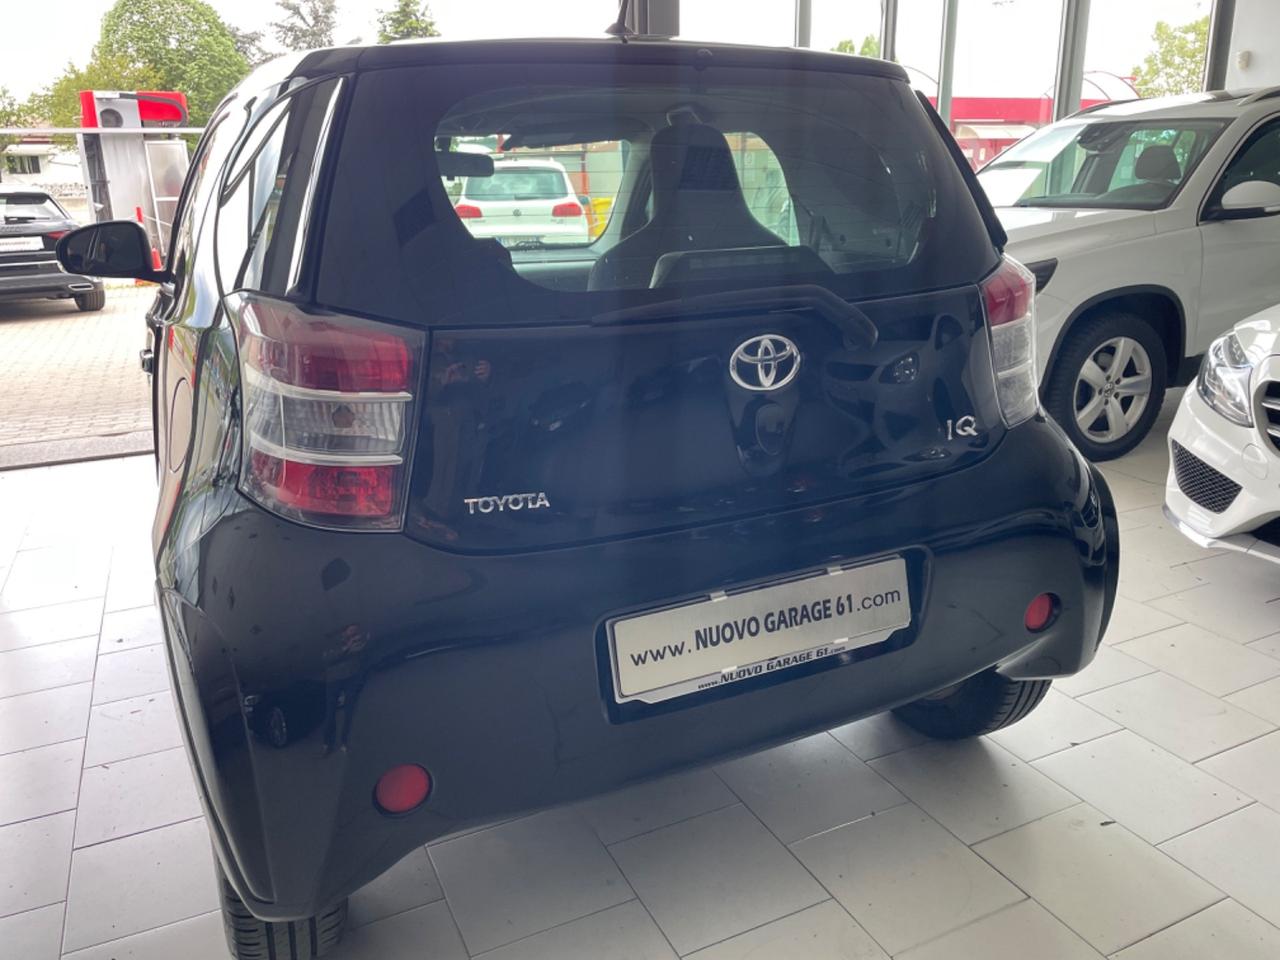 Toyota iQ 1.0 Sol